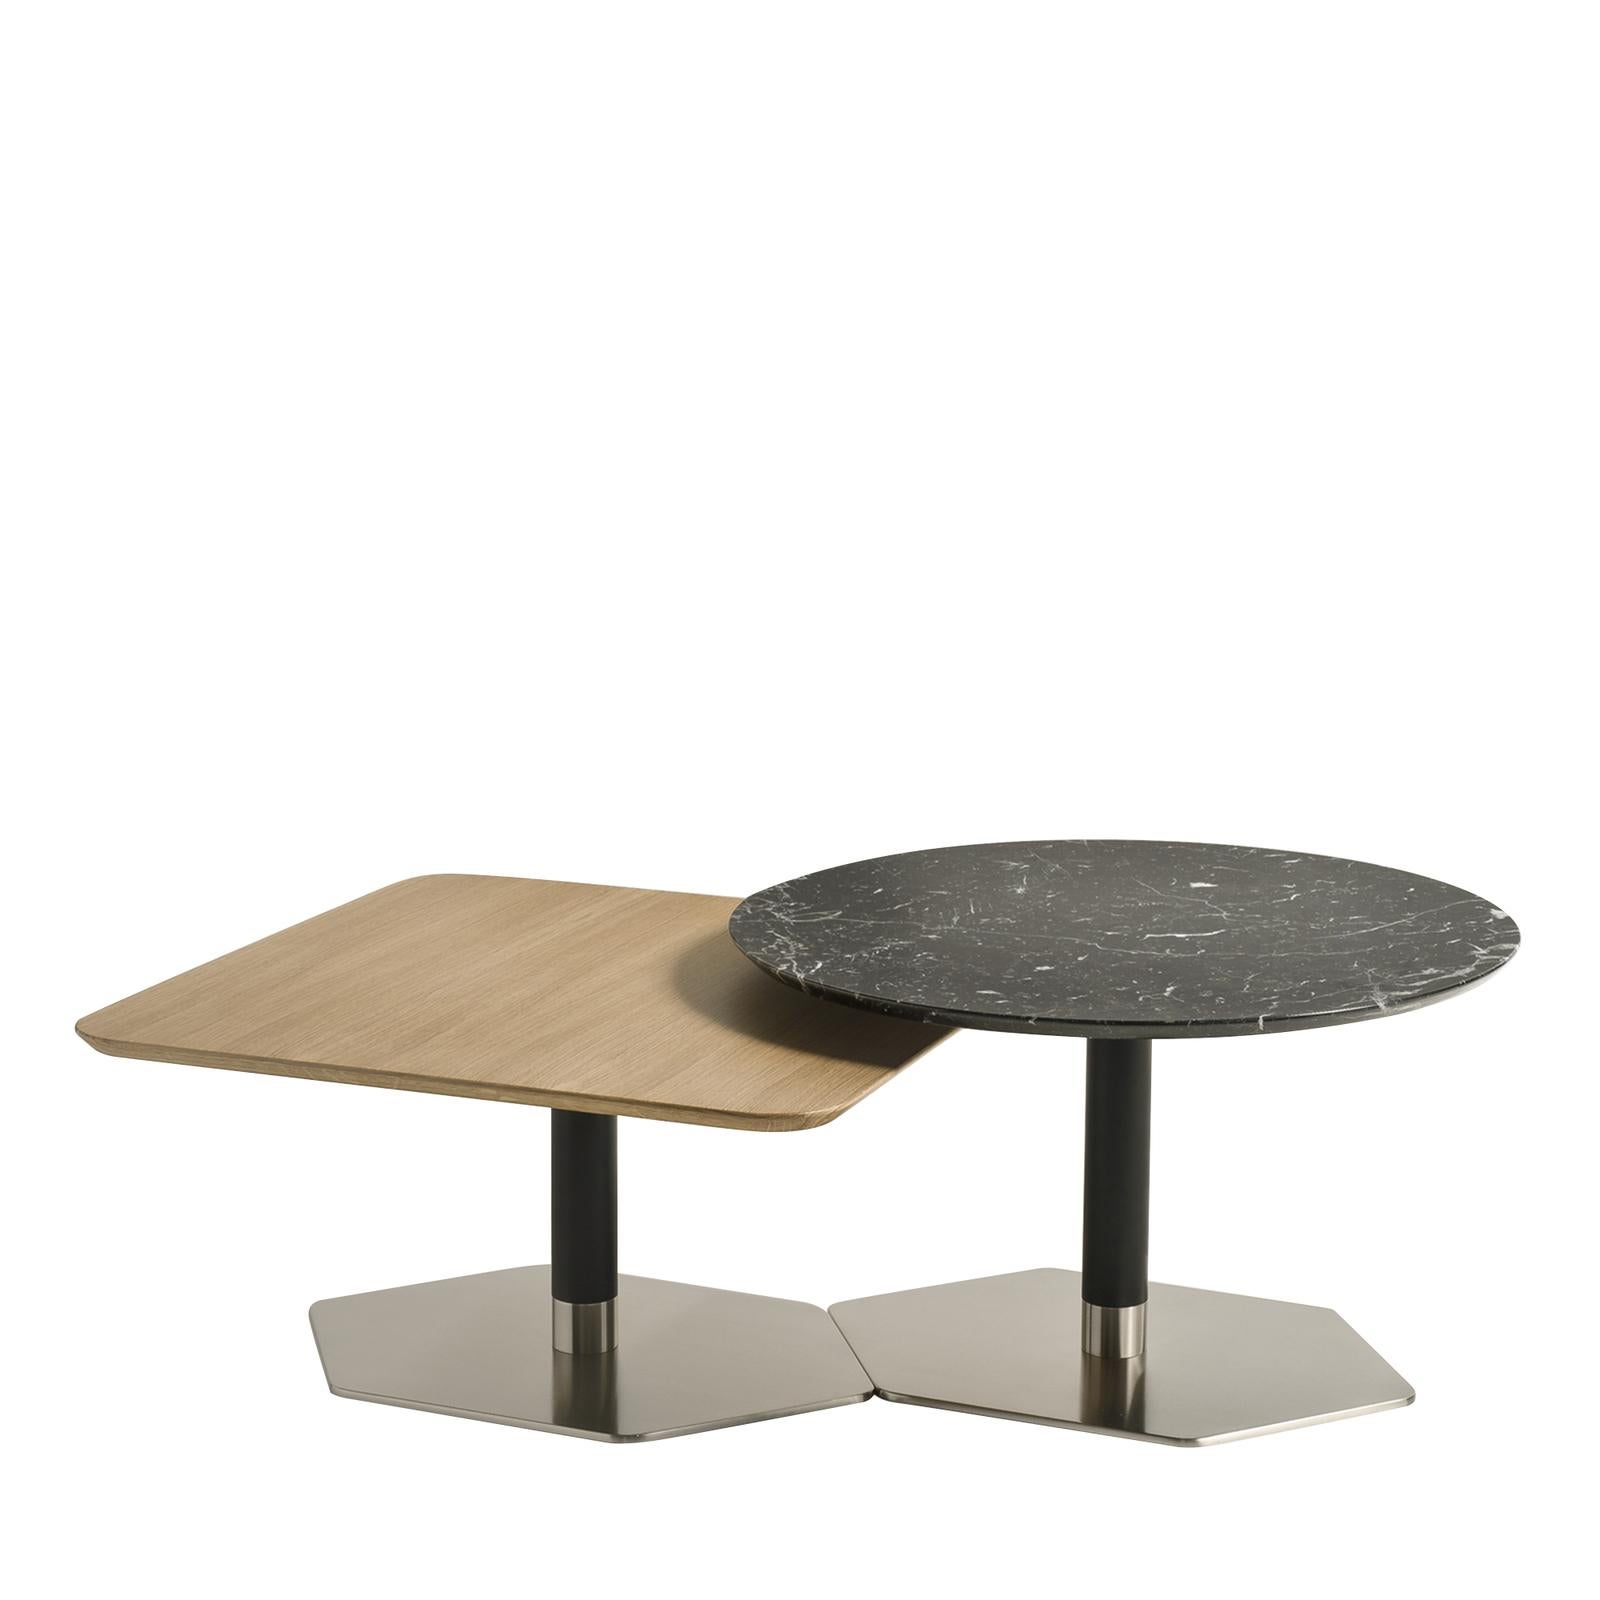 Dieses mit viel Liebe zum Detail gefertigte Tischset ist Teil der modularen Tischserie 